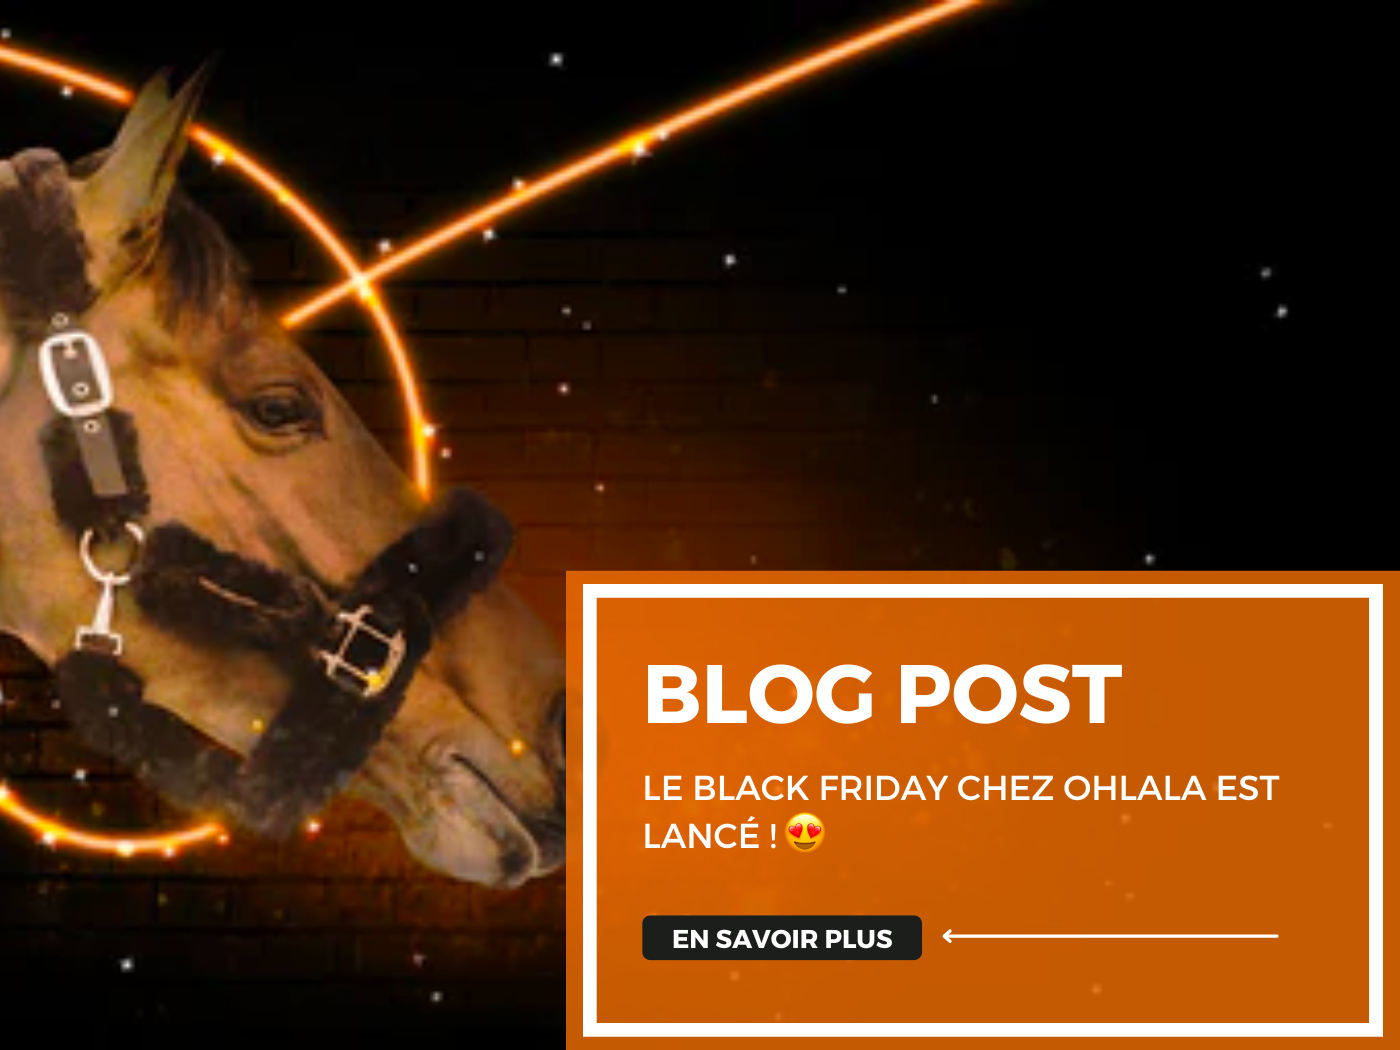 Le Black Friday chez Ohlala est lancé ! 🖤🔥